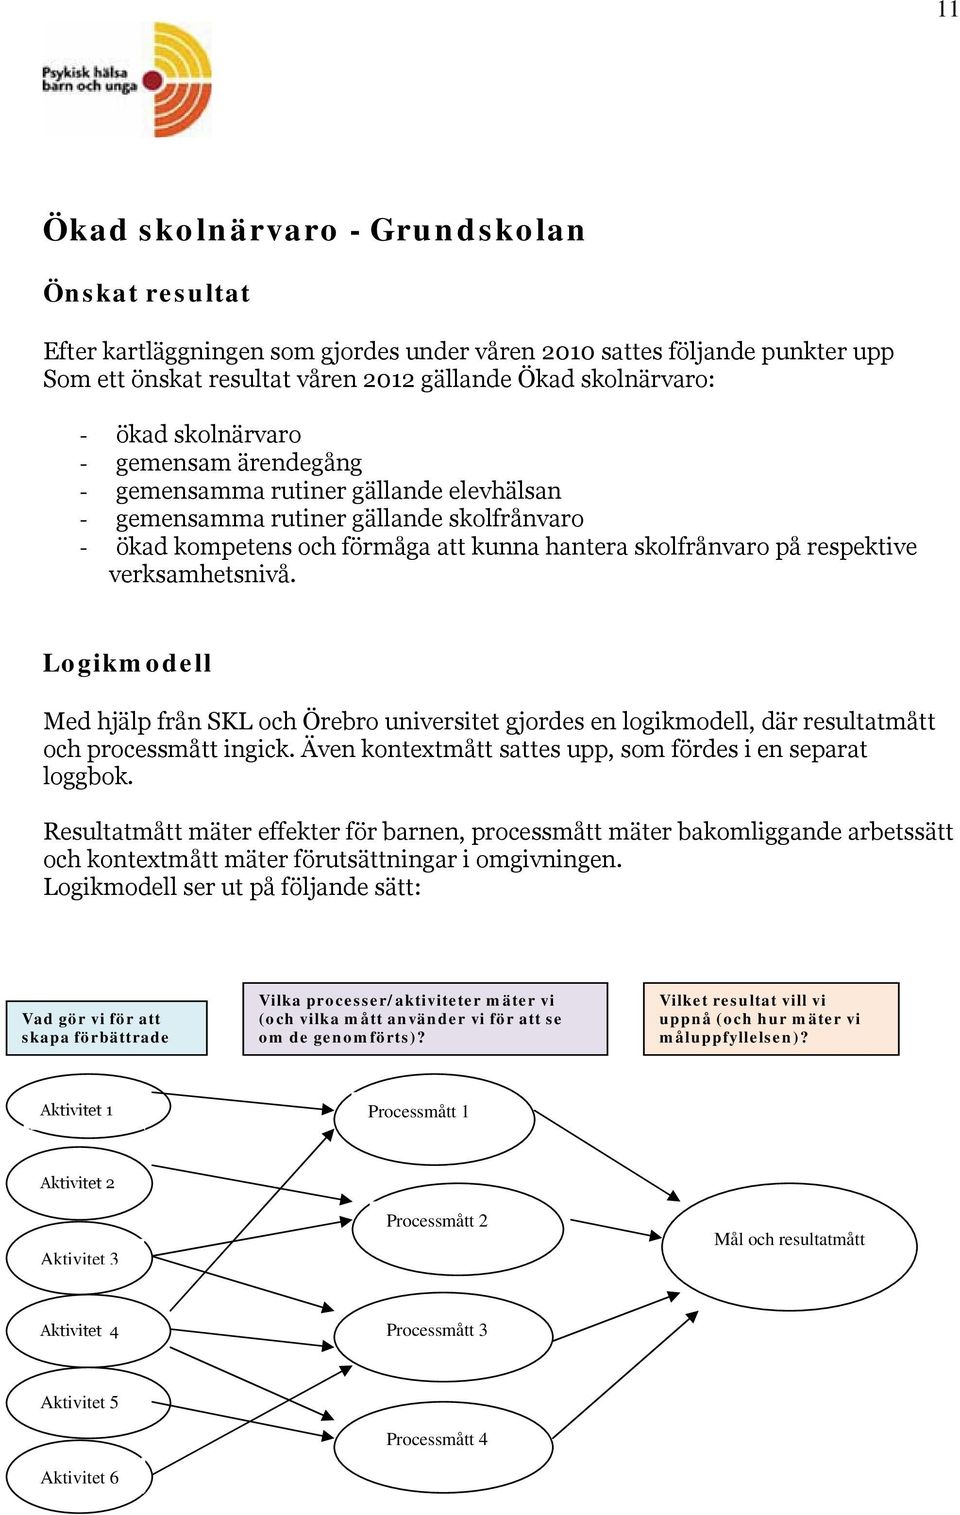 verksamhetsnivå. Logikmodell Med hjälp från SKL och Örebro universitet gjordes en logikmodell, där resultatmått och processmått ingick. Även kontextmått sattes upp, som fördes i en separat loggbok.